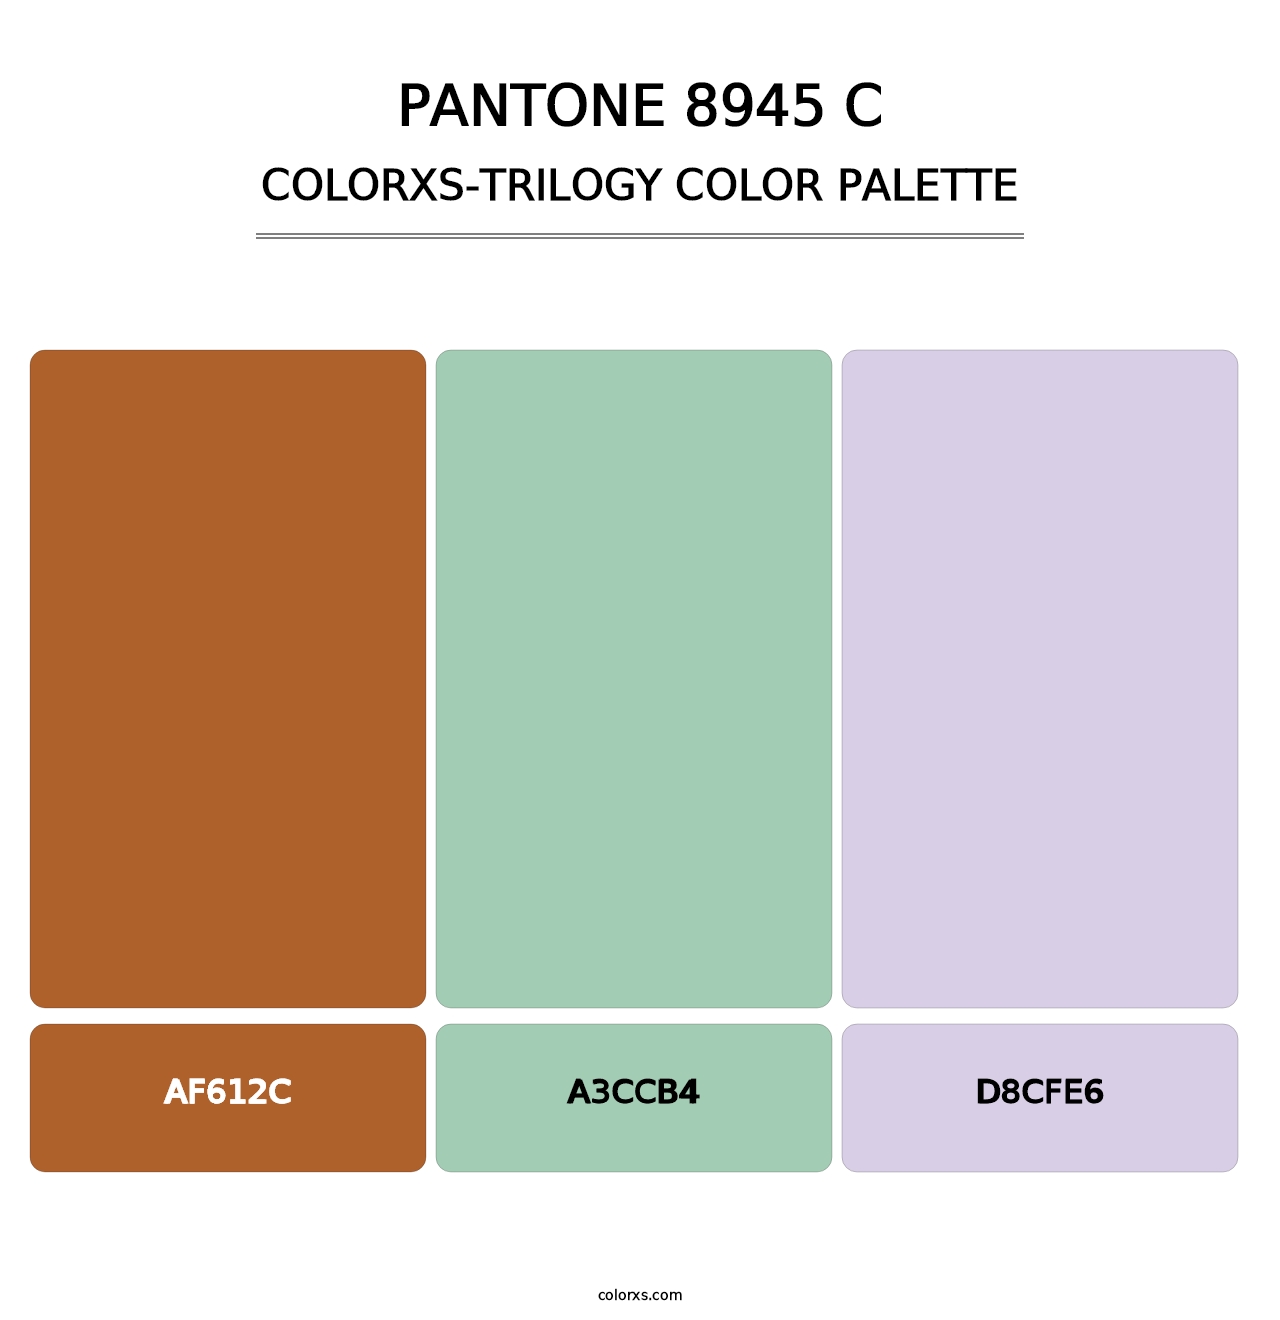 PANTONE 8945 C - Colorxs Trilogy Palette